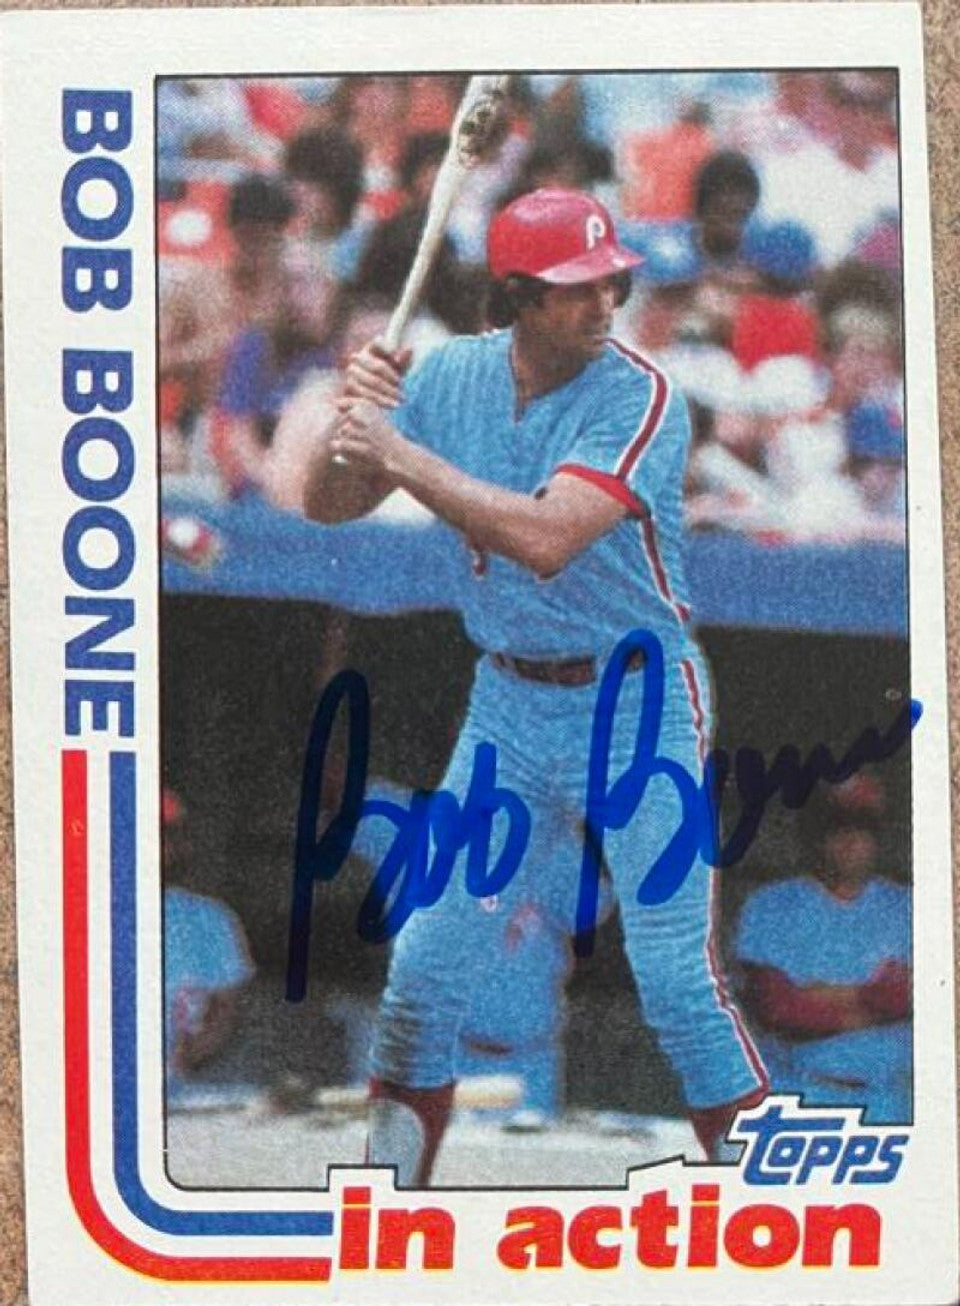 ボブ・ブーン サイン入り 1982 トップス イン アクション ベースボール カード - フィラデルフィア フィリーズ